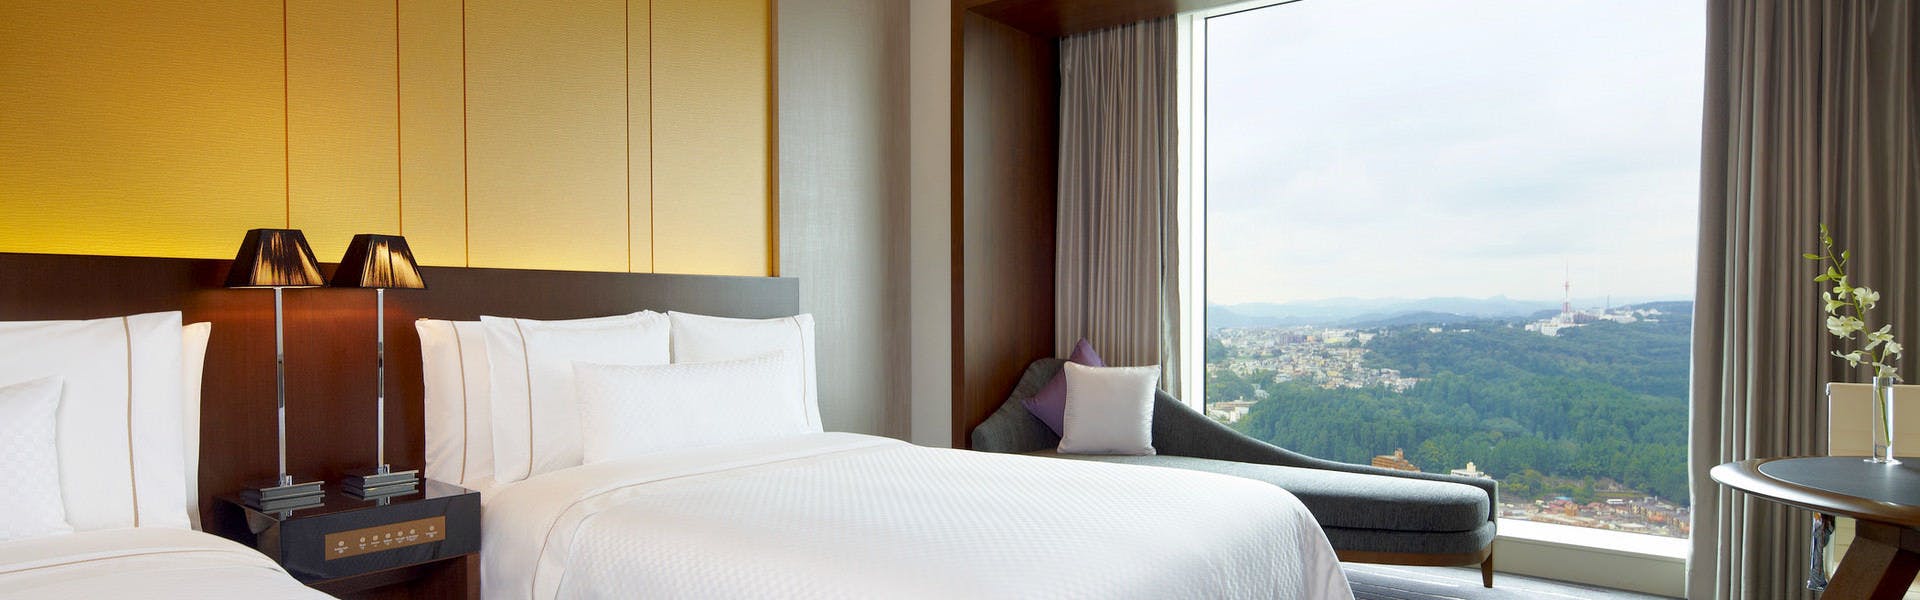 仙台市の一人旅におすすめのホテル 旅館 選 宿泊予約は 一休 Com